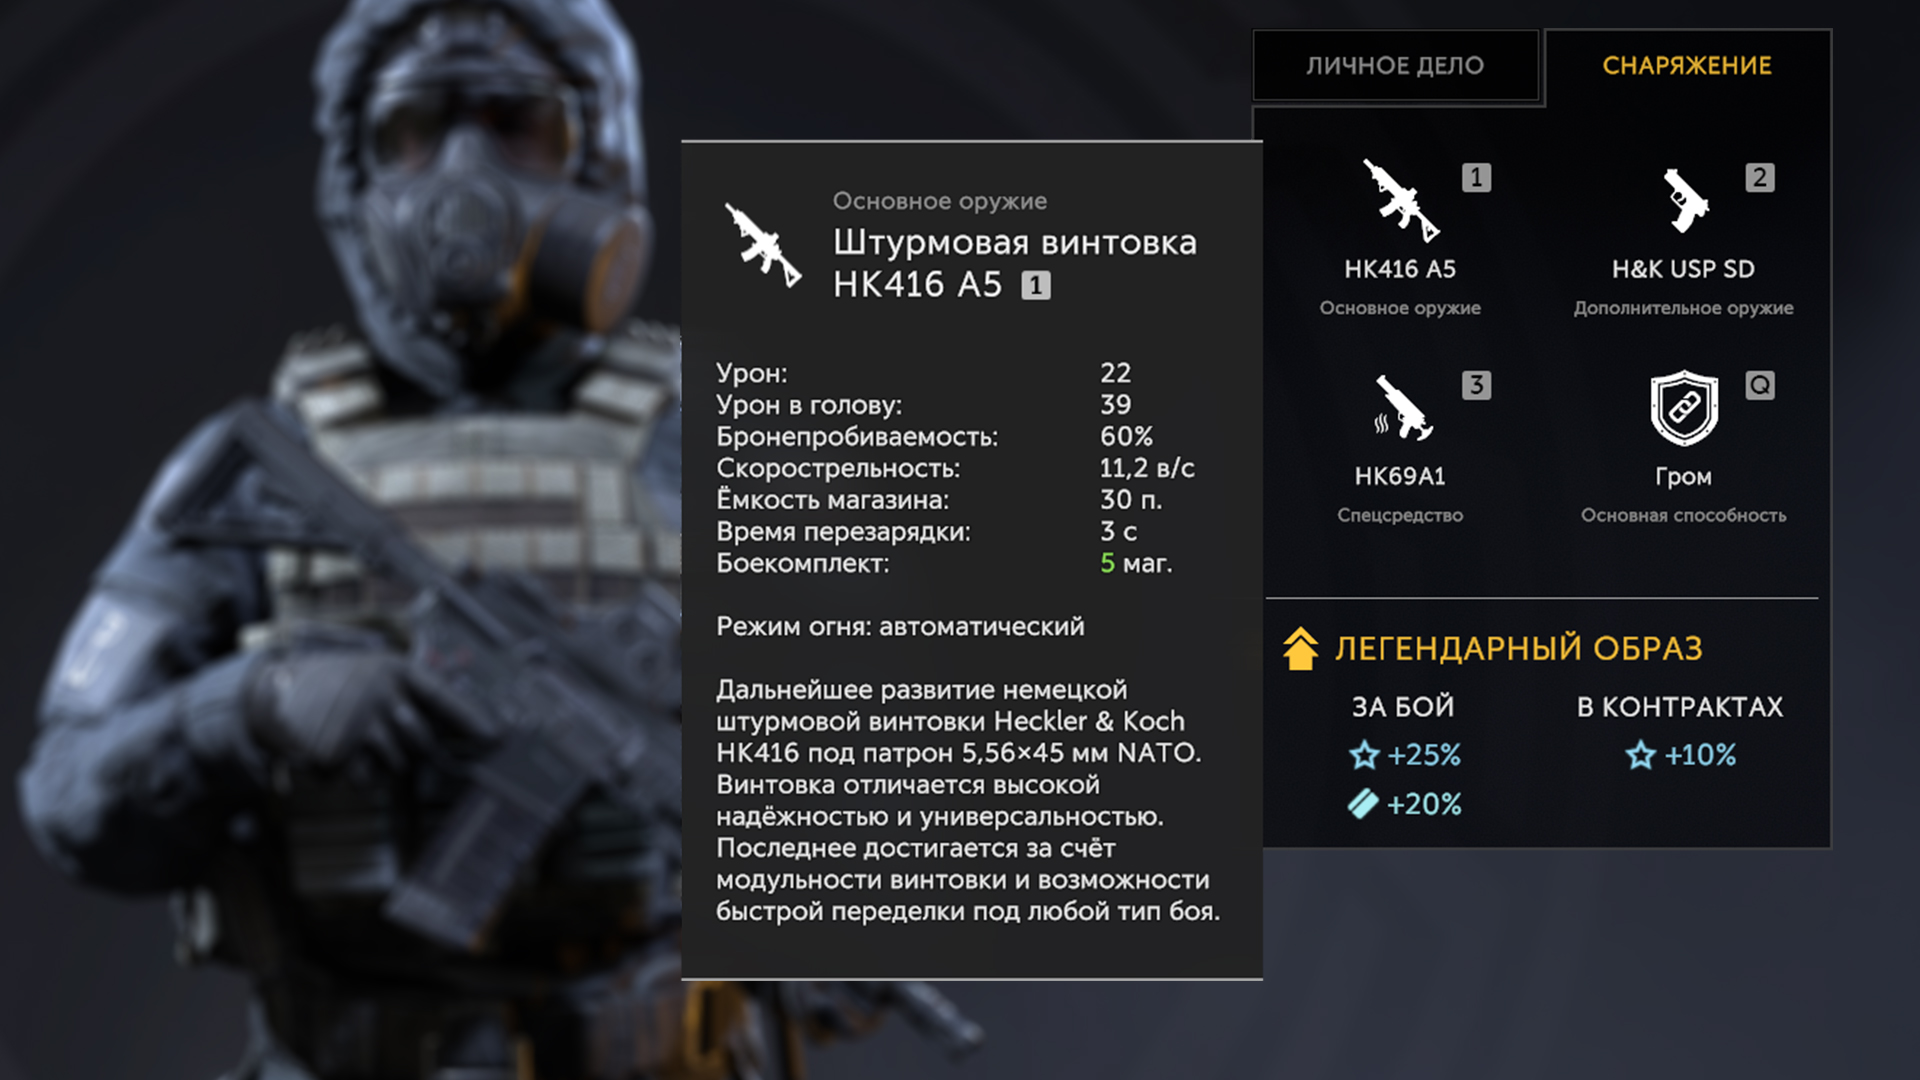 В игре урон можно увидеть, если навести курсор на иконку оружия оперативника.